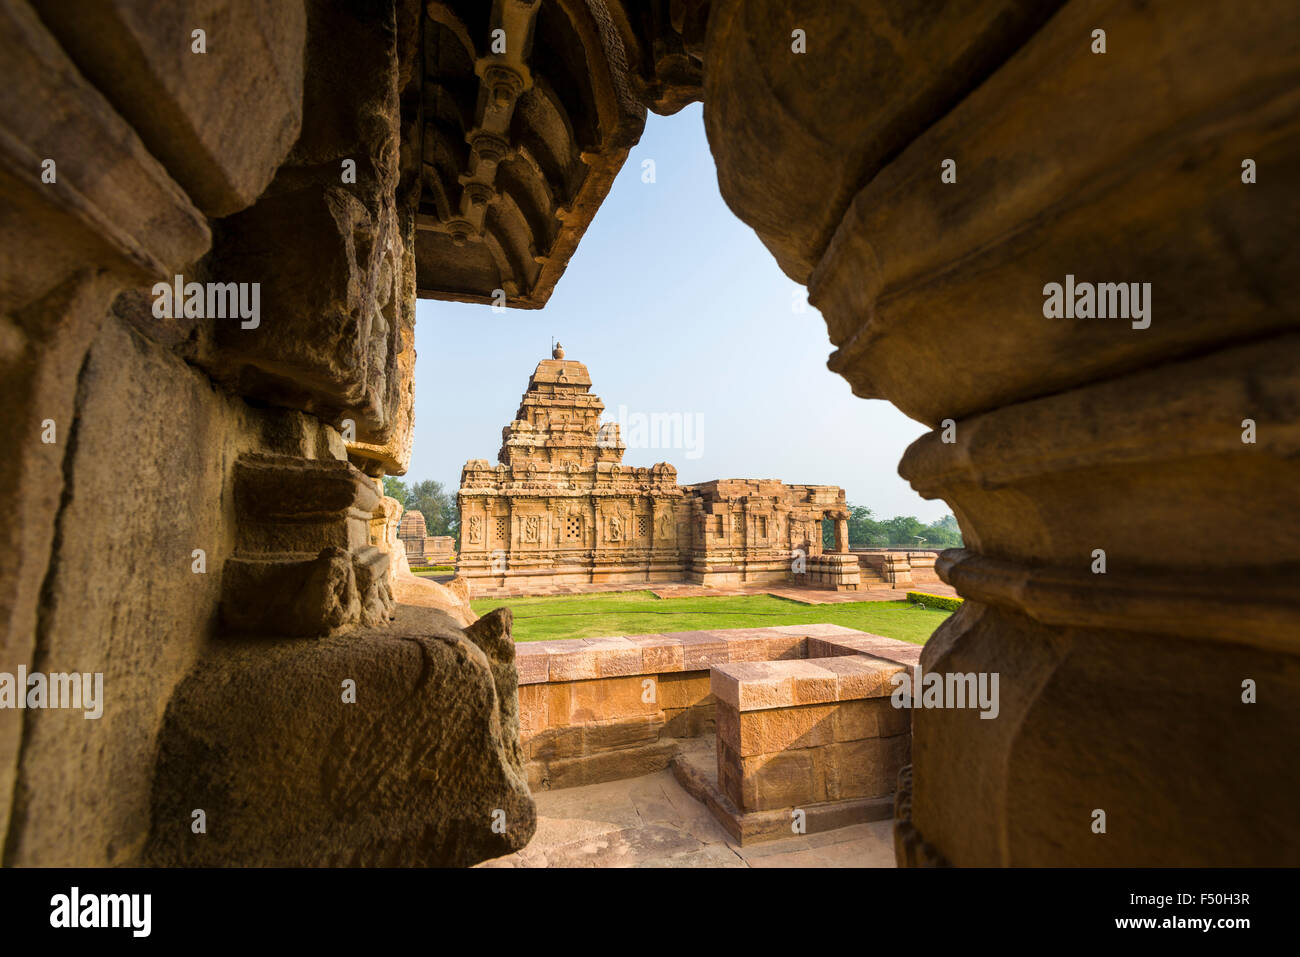 El templo sangameswara es parte de la antigua capital de la dinastía chalukya kisuvolal entre el 7º y 9º siglos, n Foto de stock